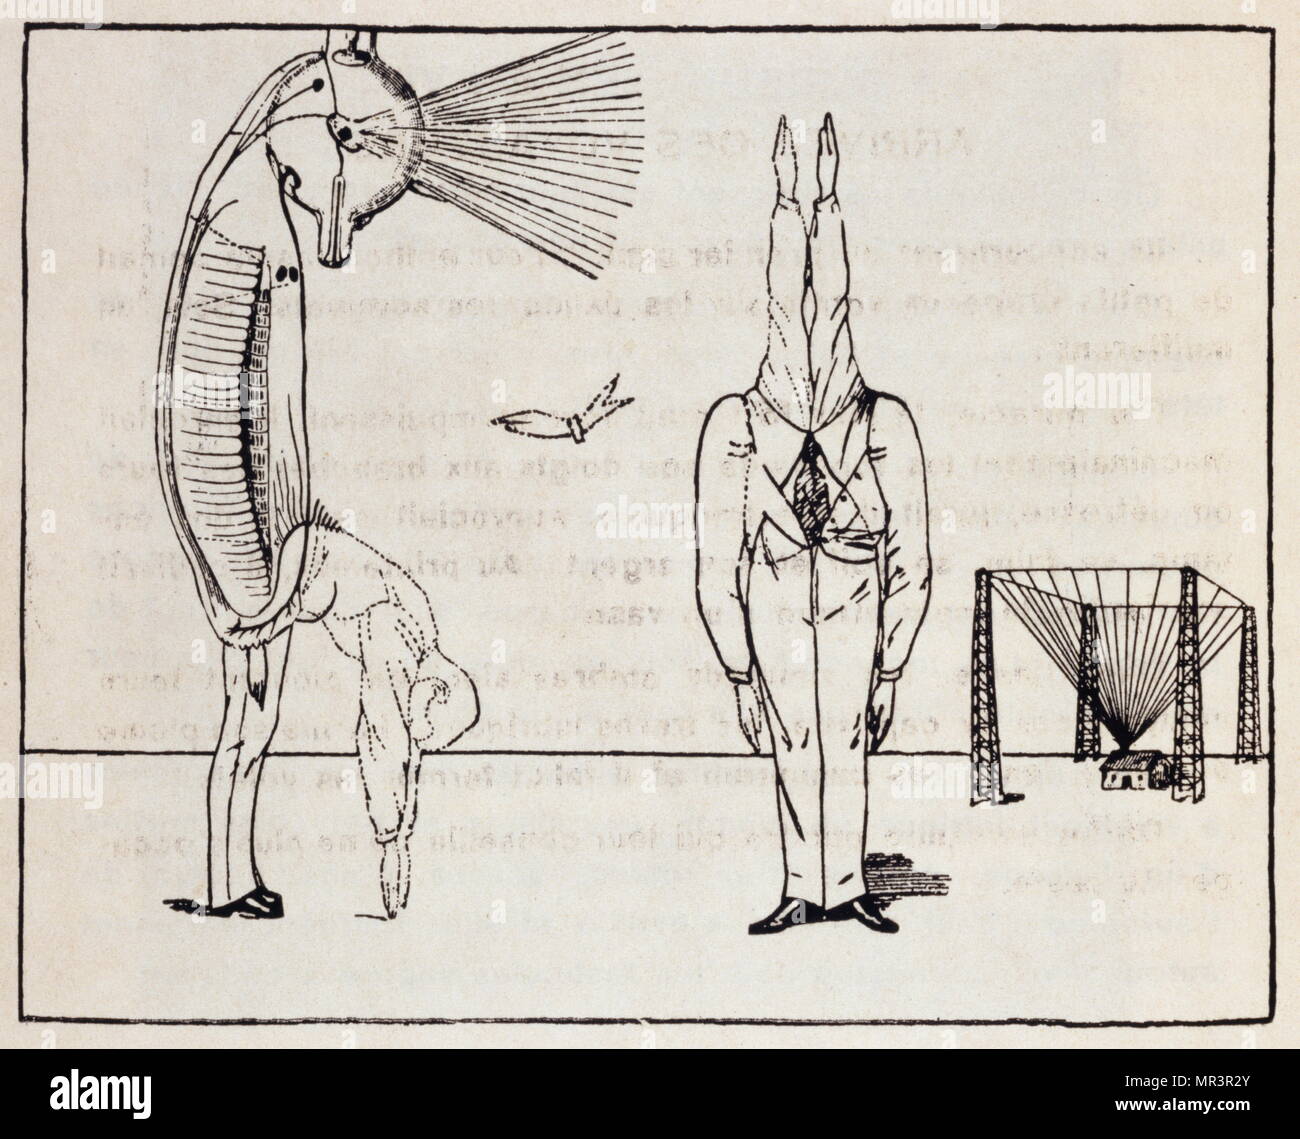 Les malheurs des Immortels. Créateur, Max Ernst, Paul Éluard, 1891-1976 et 1895-1952. Éluard était un poète surréaliste français Banque D'Images